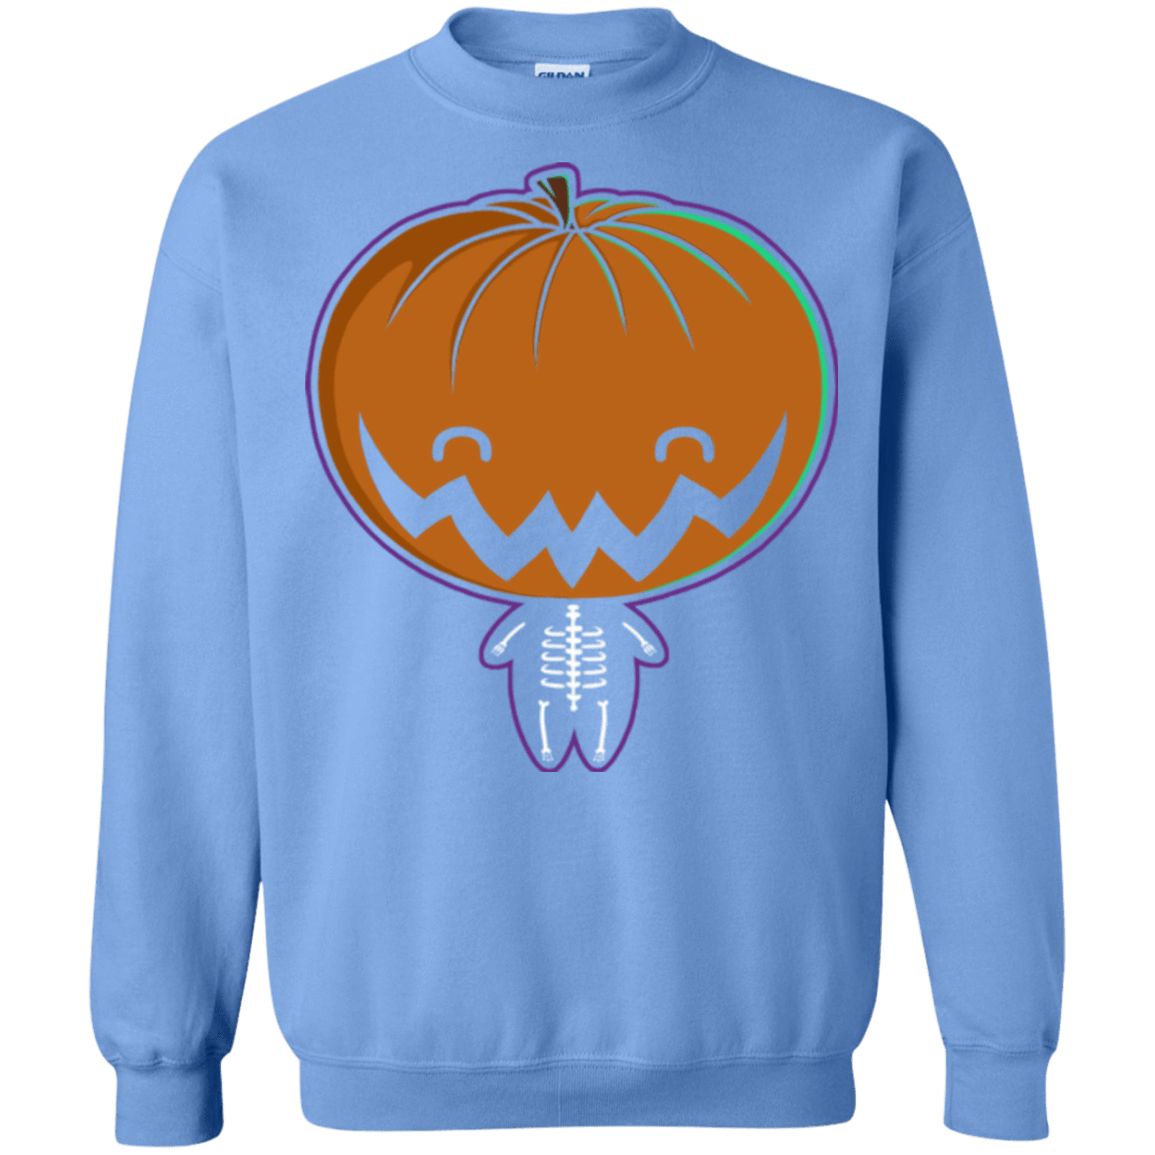 Sweatshirts Carolina Blue / Small Pumpkin Head Crewneck Sweatshirt